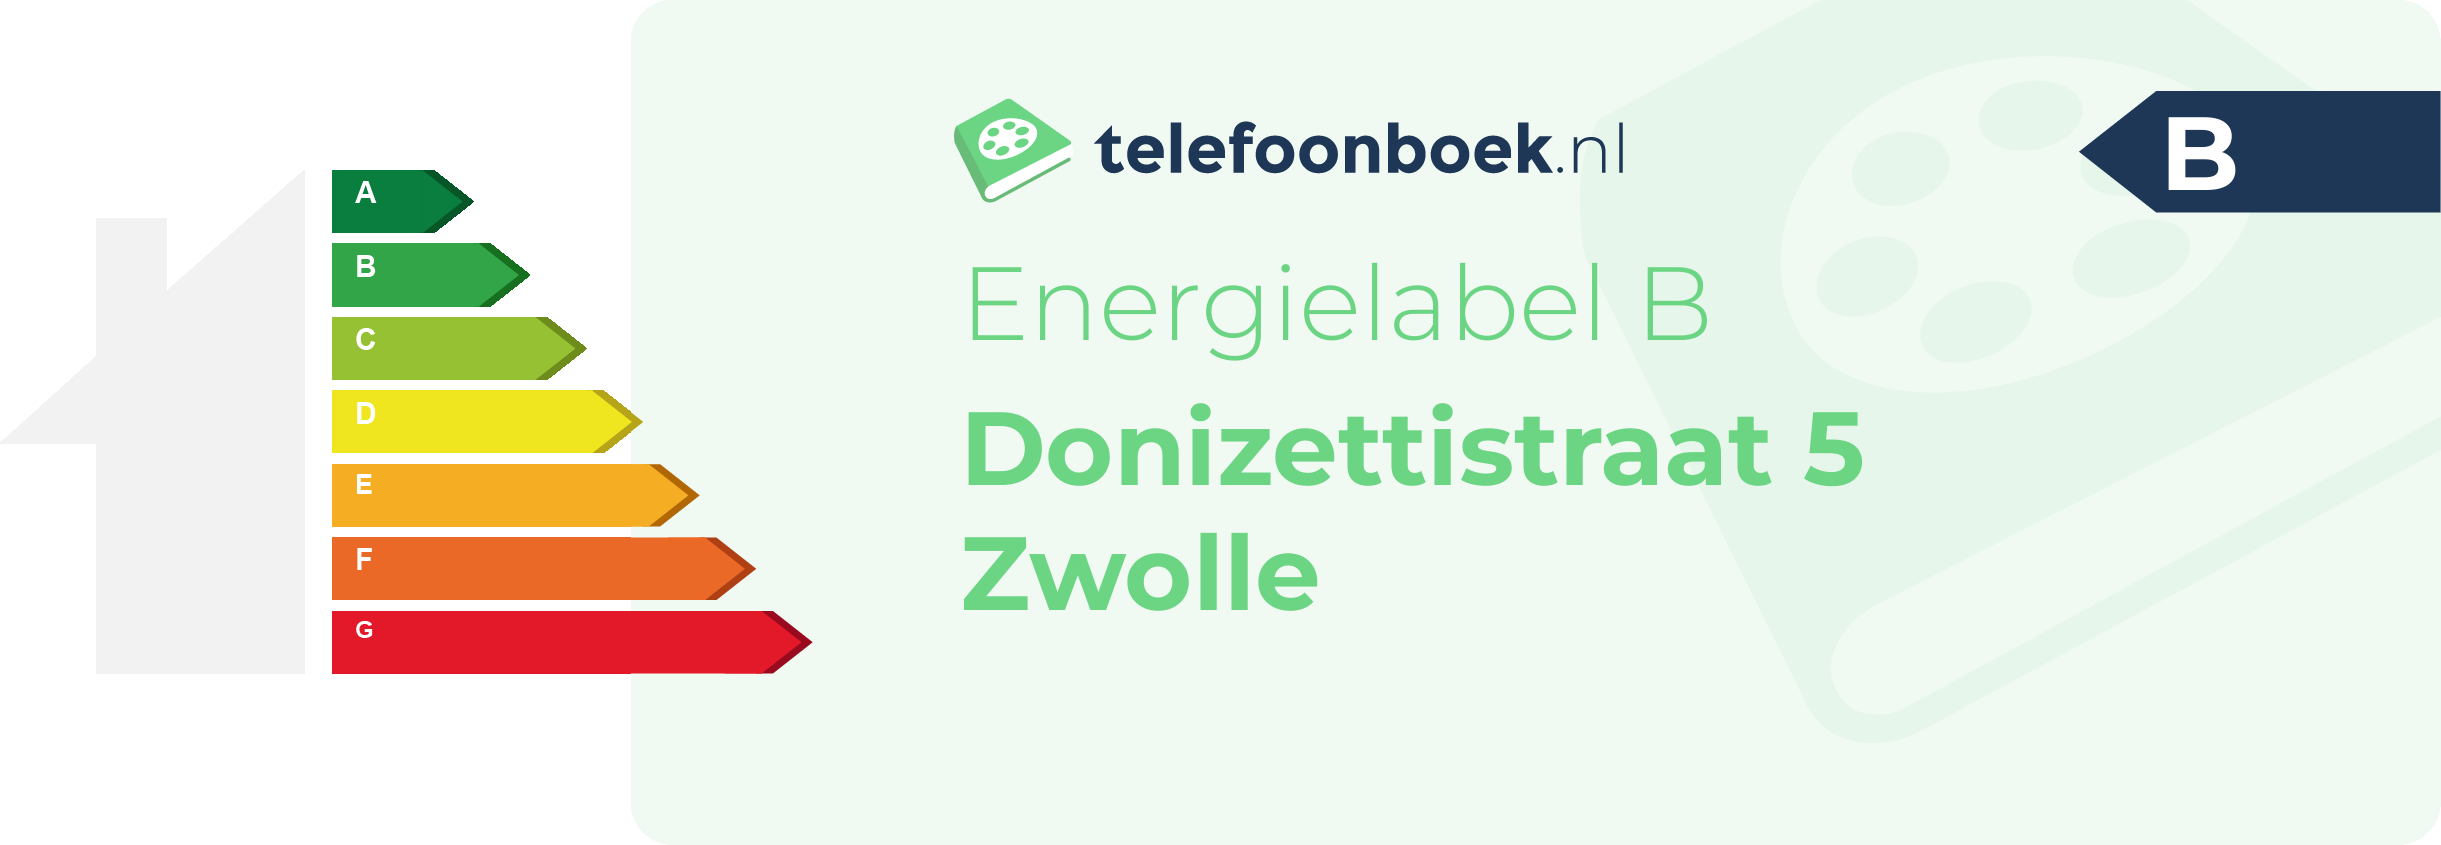 Energielabel Donizettistraat 5 Zwolle